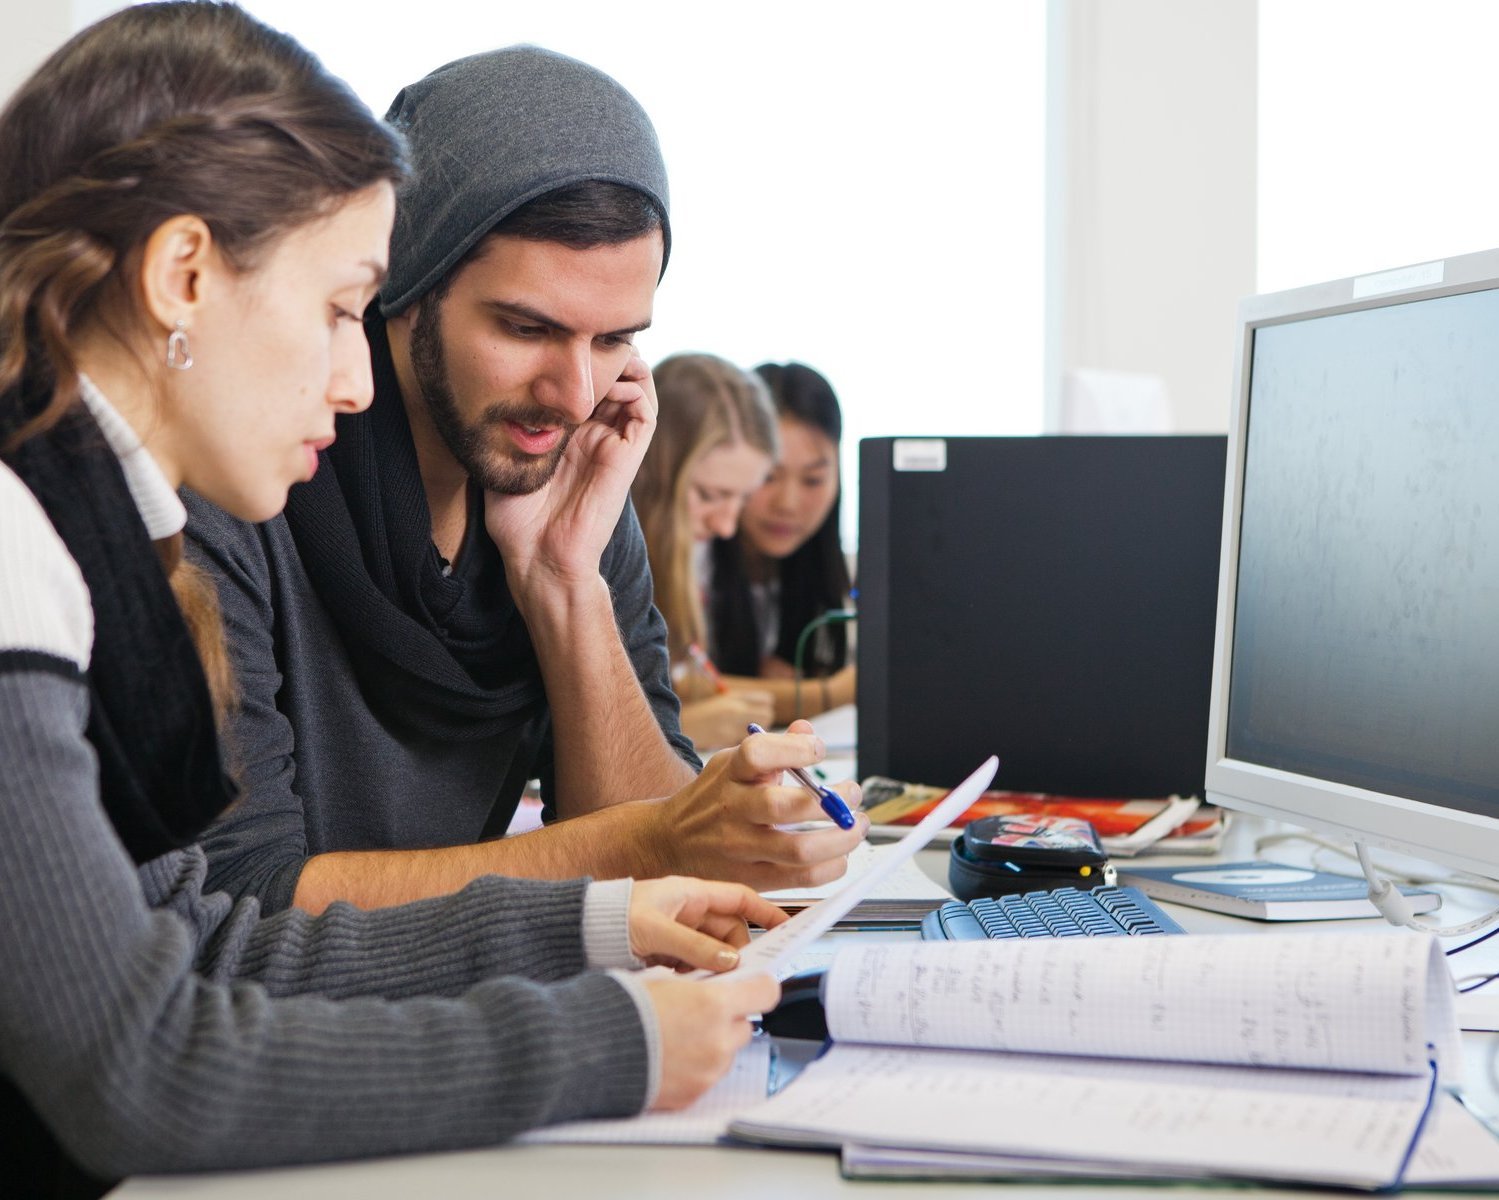 Eine junge Frau und ein junger Mann sitzen vor einem Bildschirm und diskutieren. Im Hintergrund sind zwei weitere Studentinnen zu erkennen, die sich ebenfalls unterhalten.